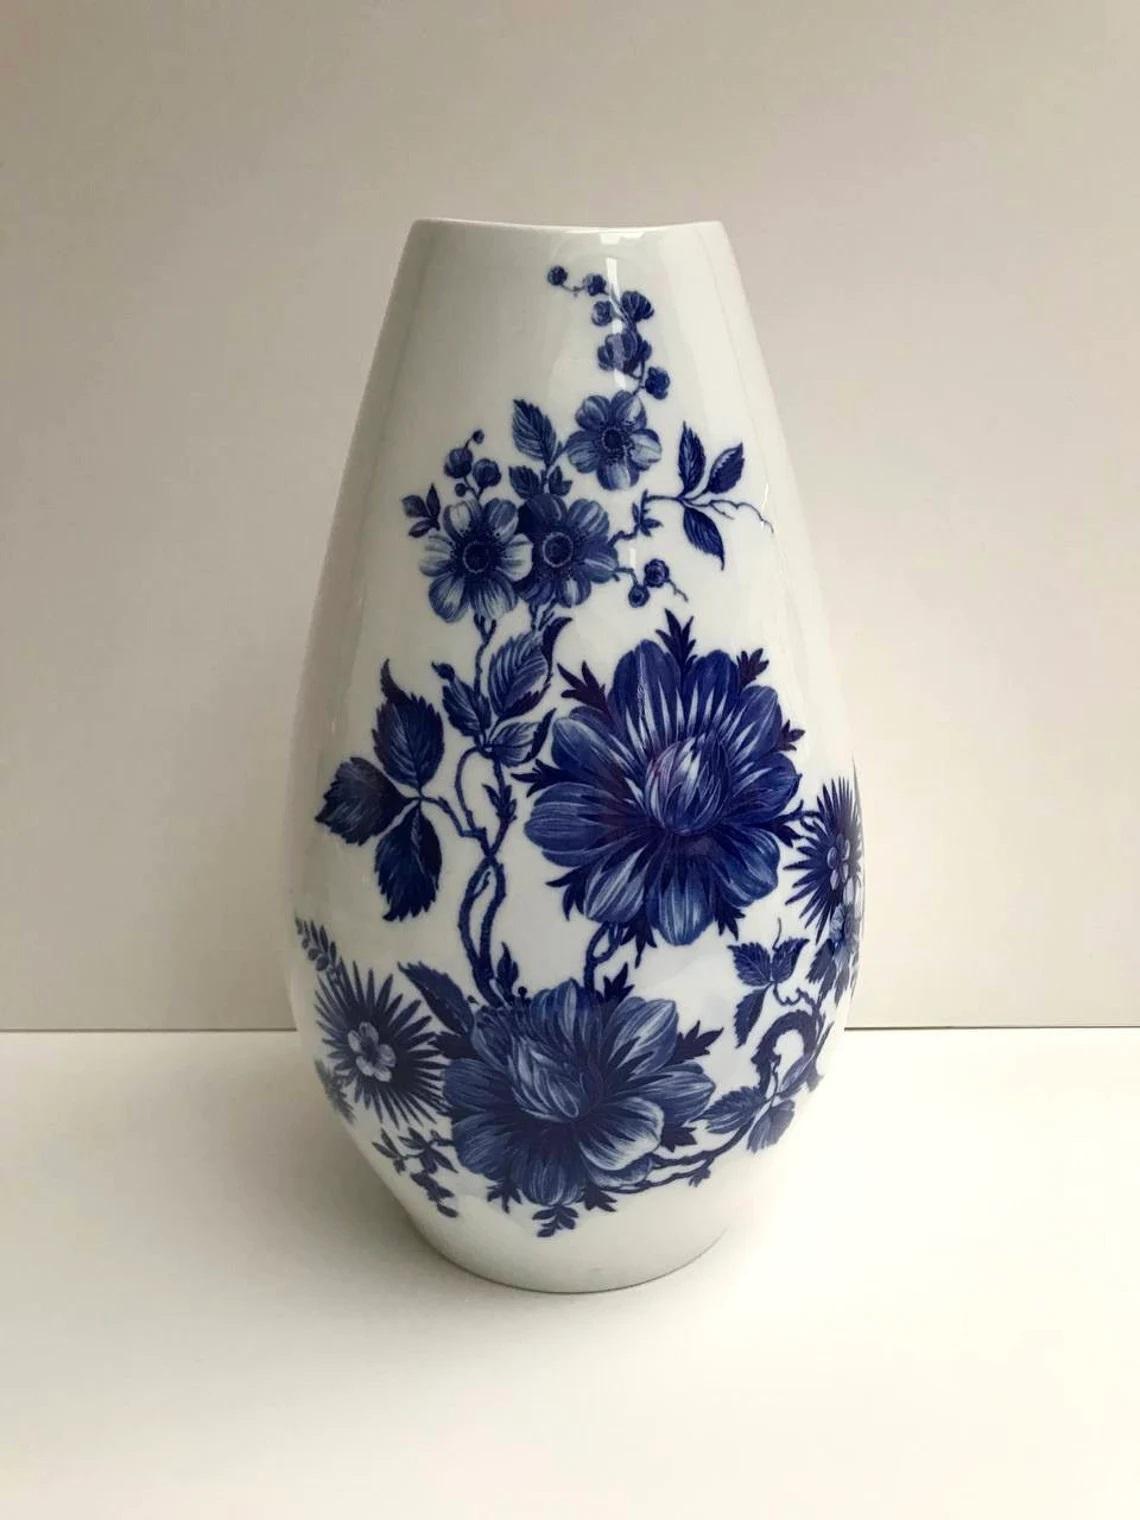 Vintage Vase aus blauem und weißem Porzellan

Große kobaltfarbene Vase

Schumann Arzberg Deutschland

Hohe, bodenständige Vase aus Porzellan bekannter Manufaktur Schumann Arzberg.
Viele unterschätzen den dekorativen Wert von Vasen im